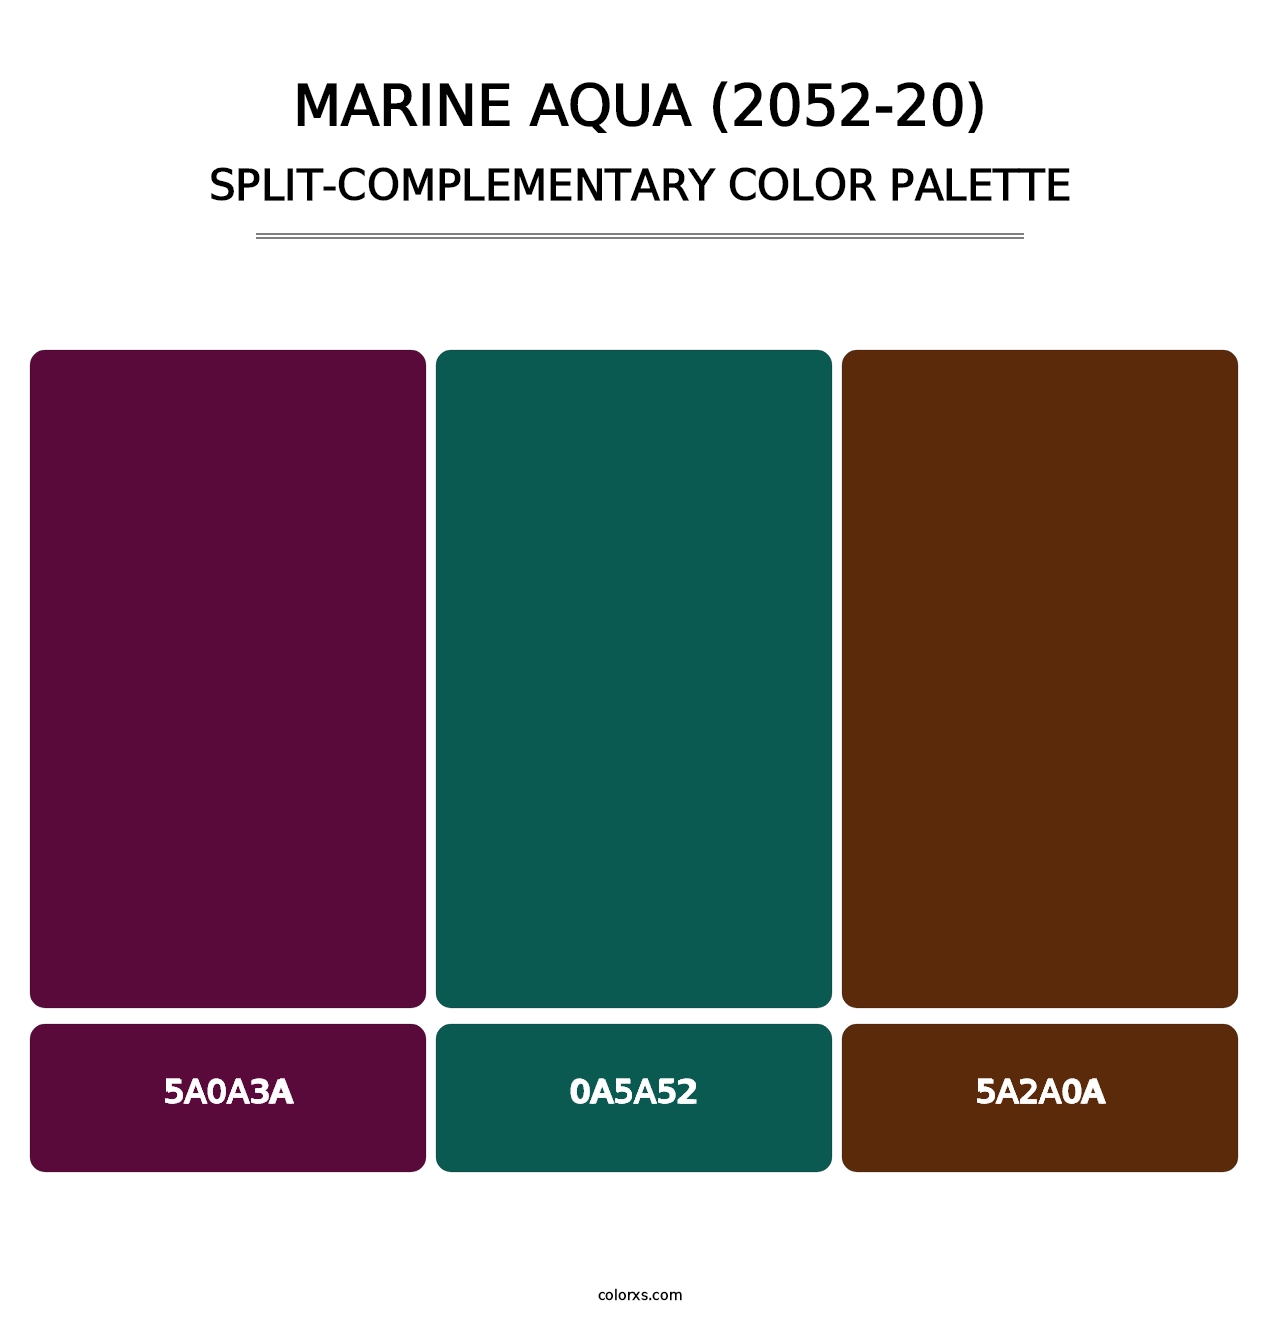 Marine Aqua (2052-20) - Split-Complementary Color Palette